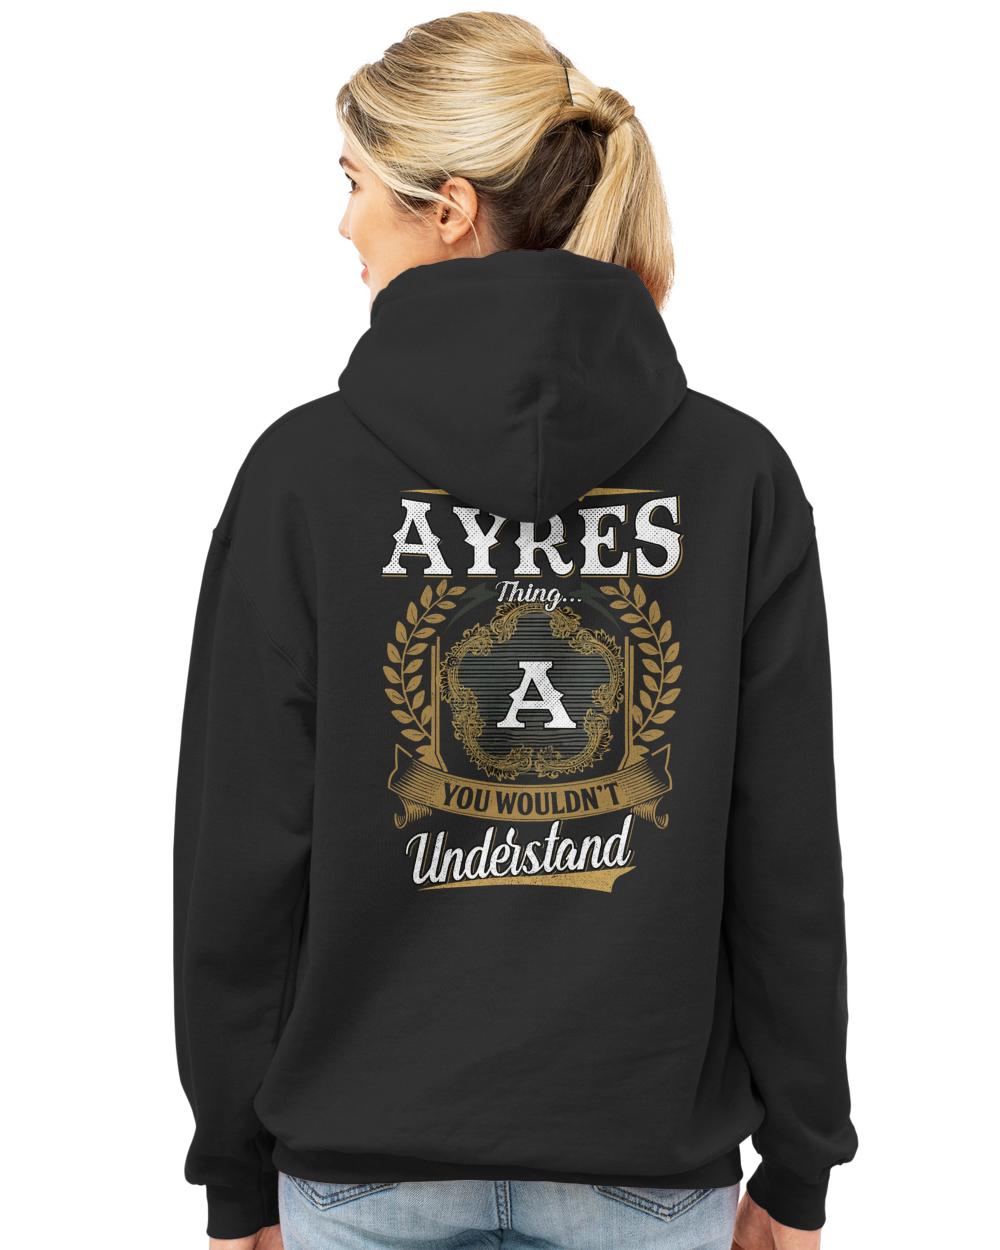 AYRES-13K-1-01